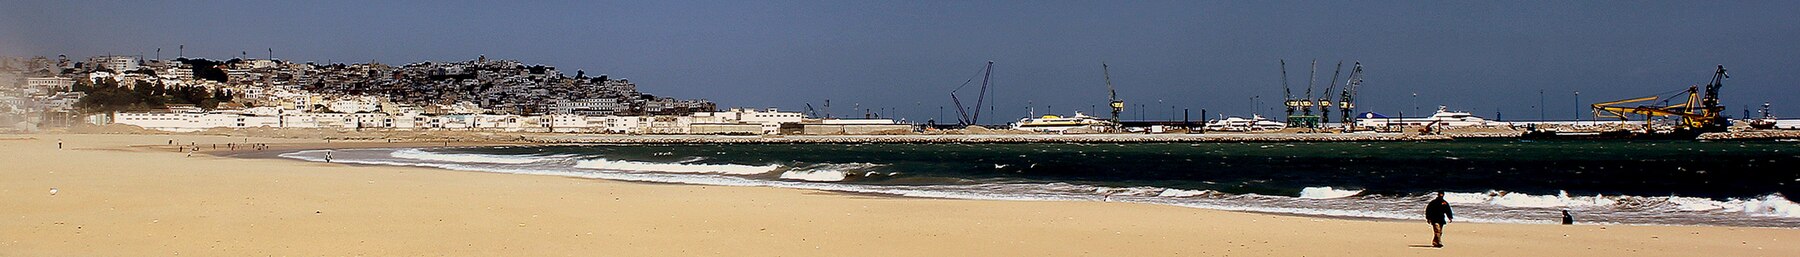 Tanger banner Beachfront.jpg